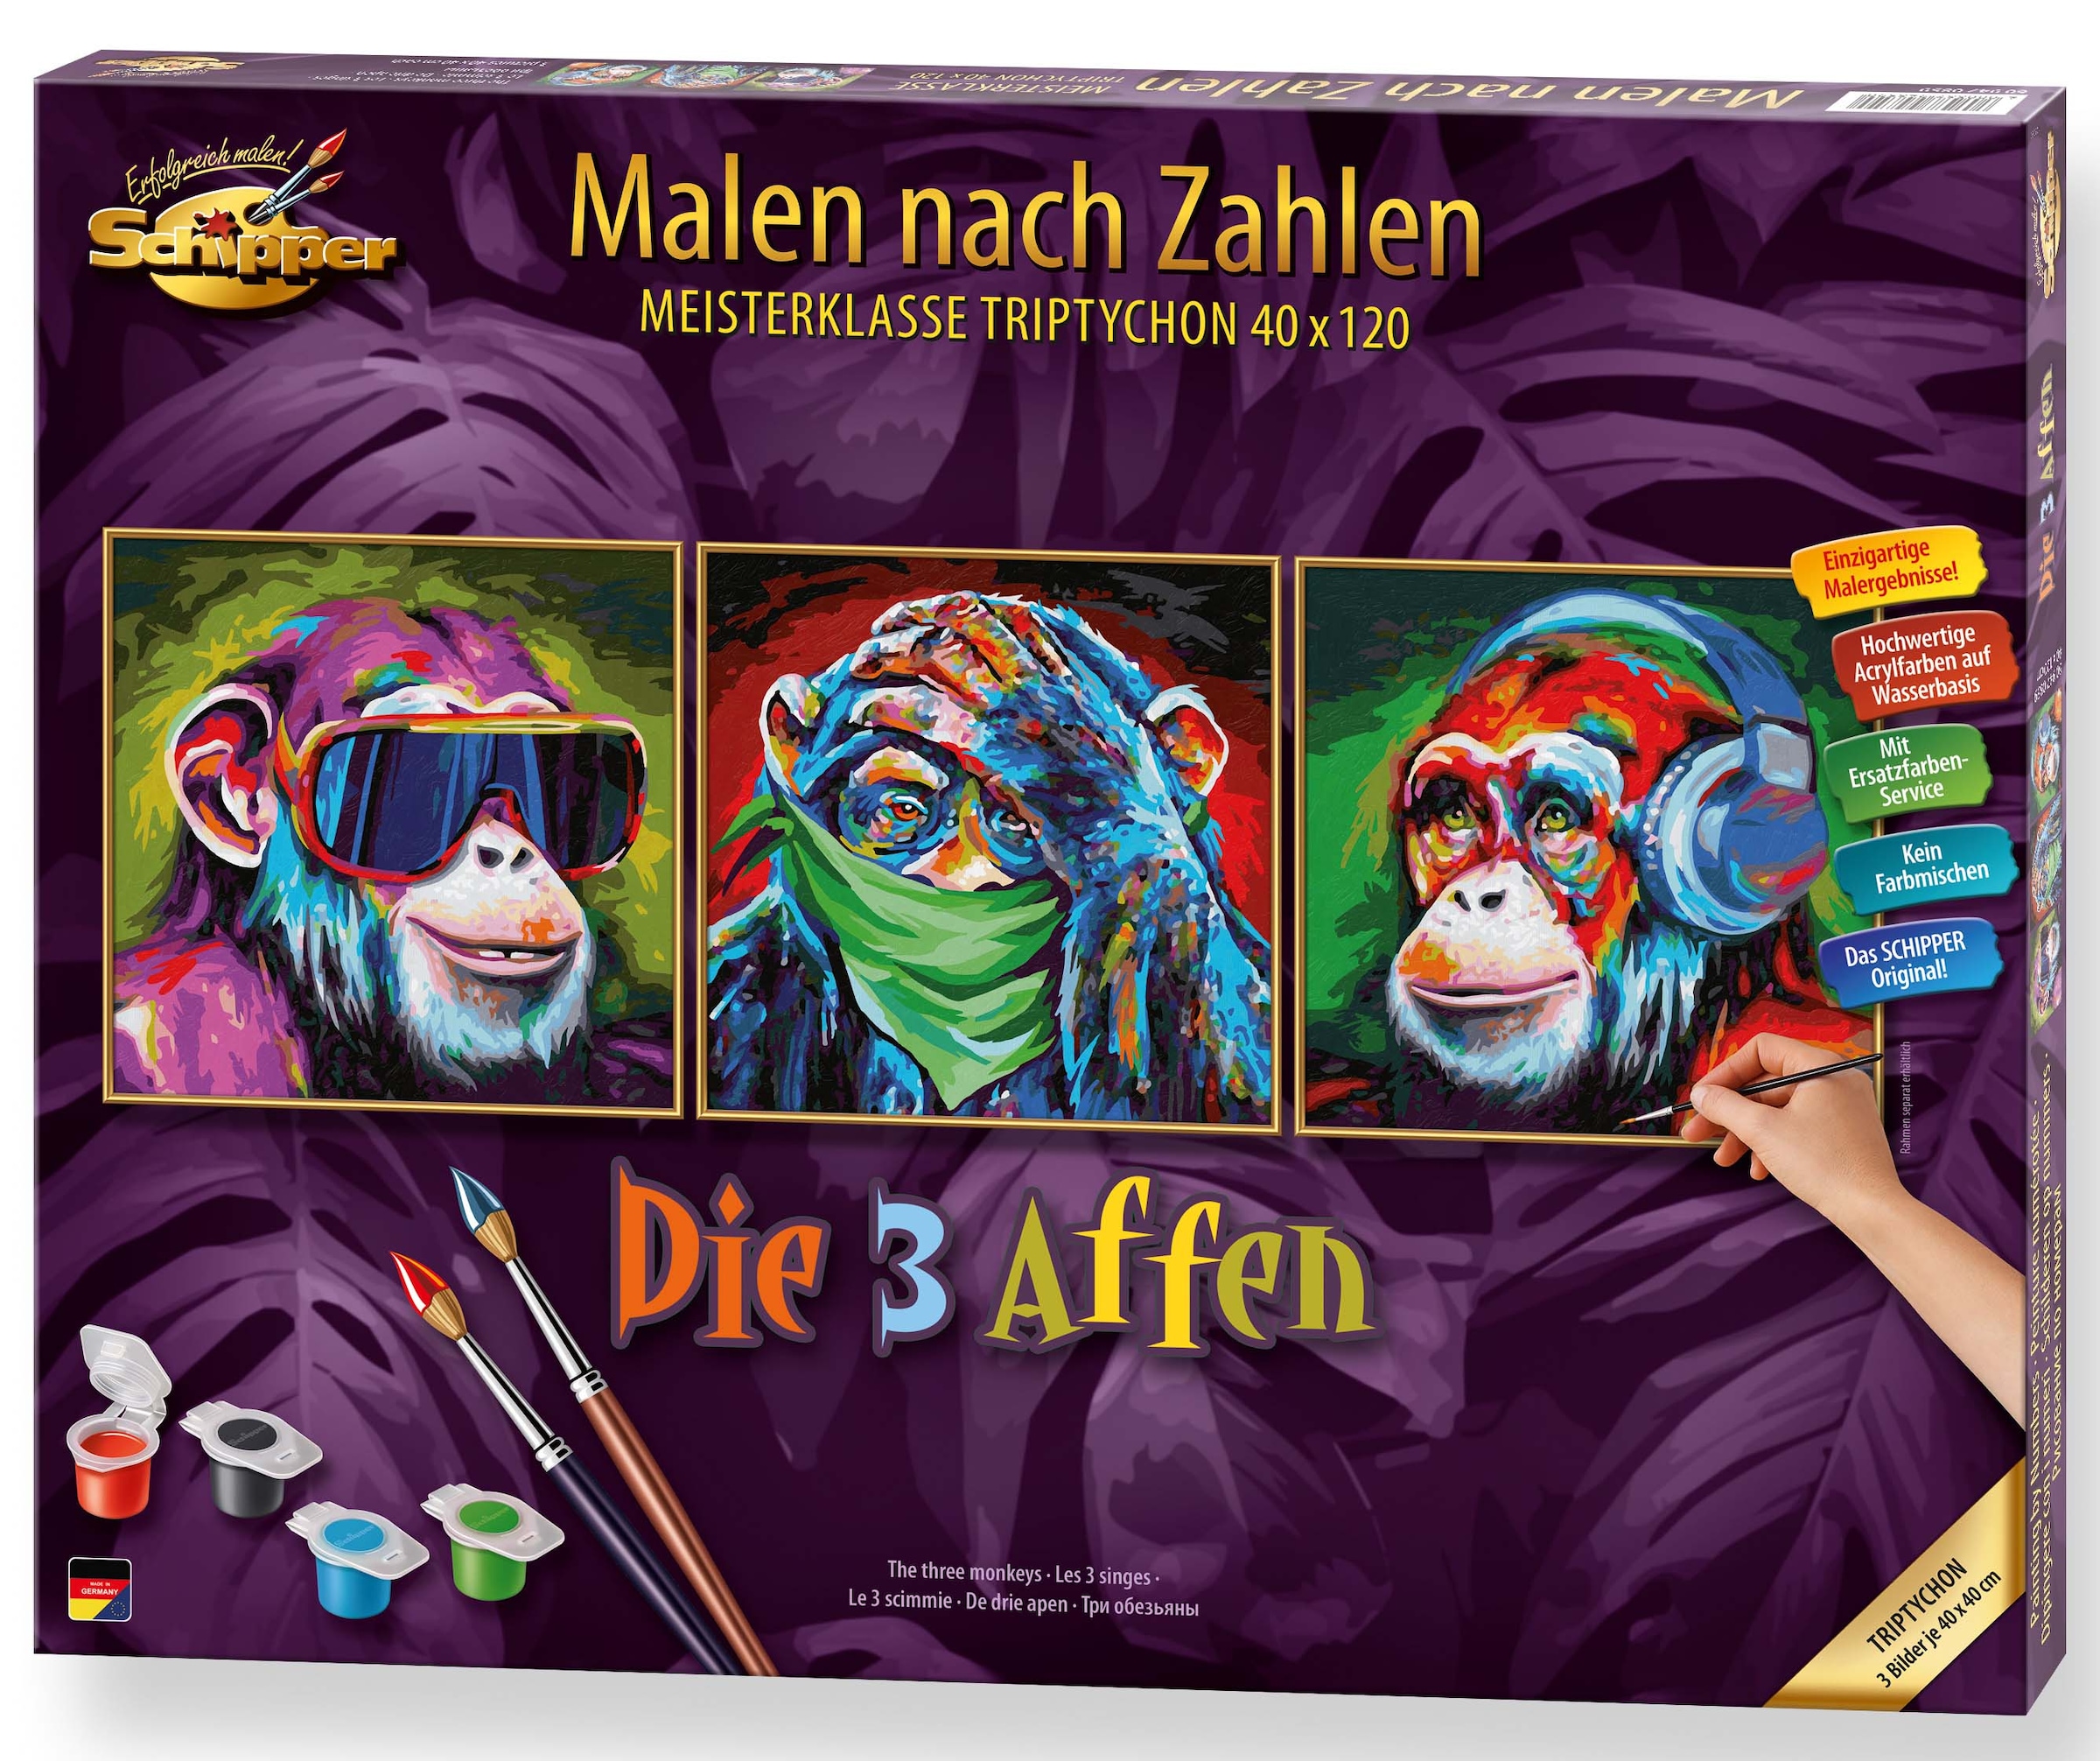 »Meisterklasse - Zahlen in Germany nach Schipper Malen 3 bestellen Affen«, Die online Made Triptychon